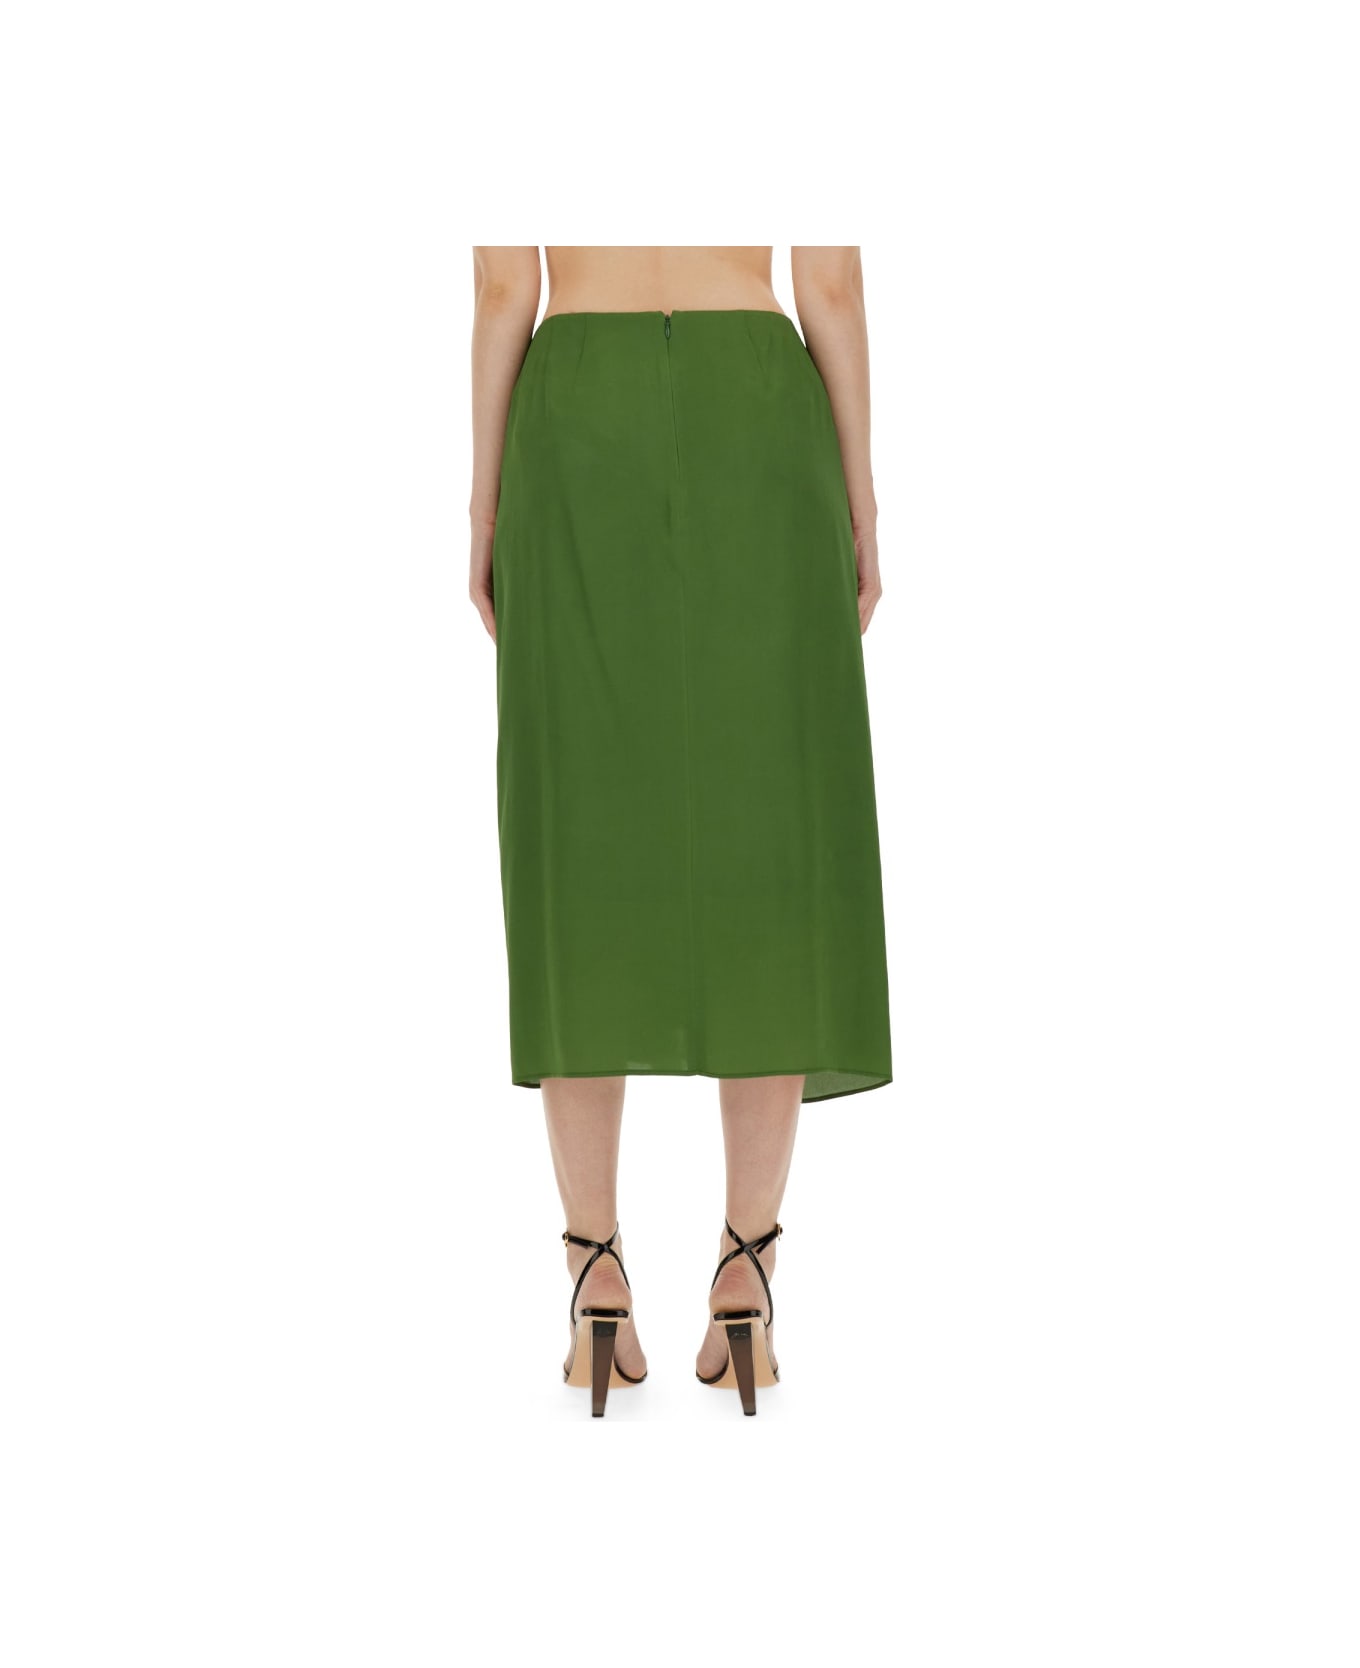 Dries Van Noten Silk Blend Skirt - GREEN スカート